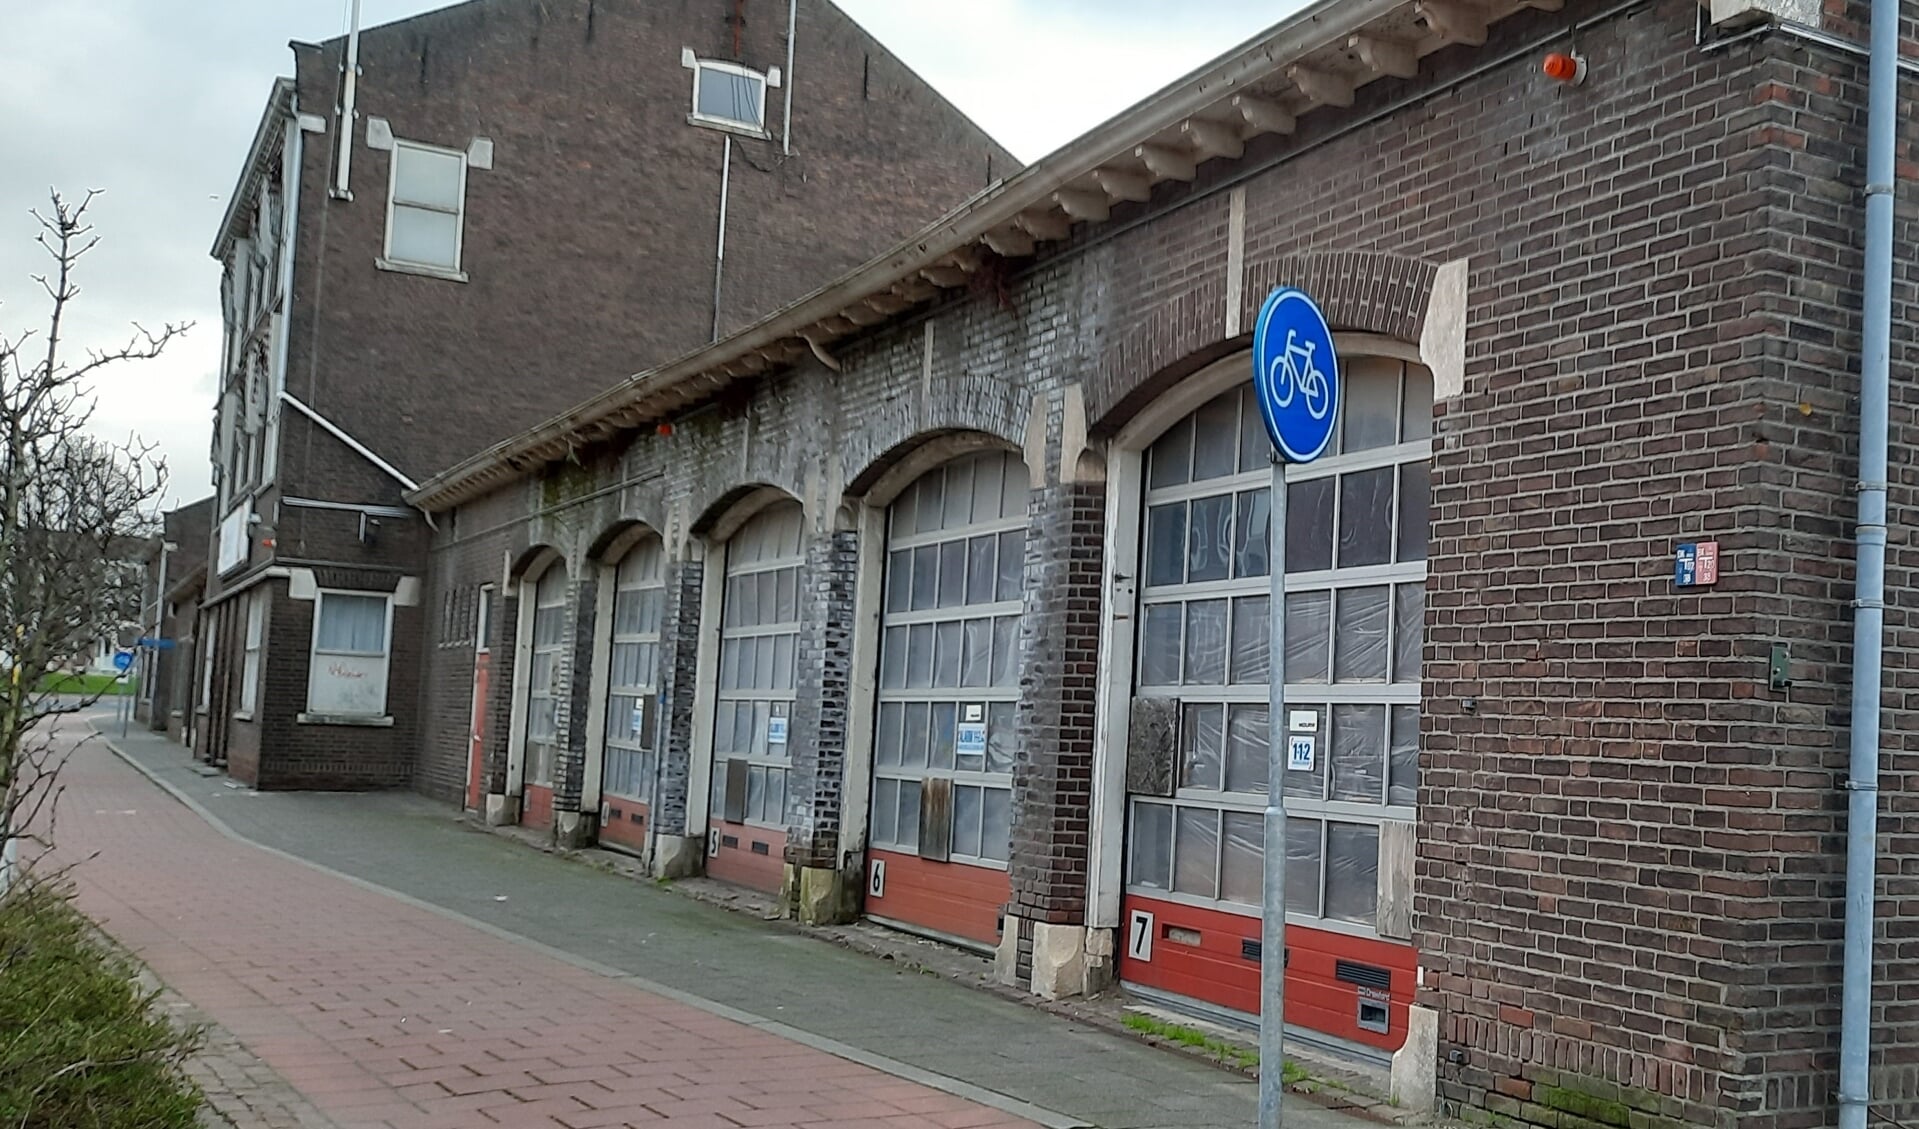 De brandweerkazerne aan de Hoflaan, die op het punt staat verkocht te worden, lijkt in een gerenoveerde vorm, een nieuwe toekomst tegemoet te gaan.